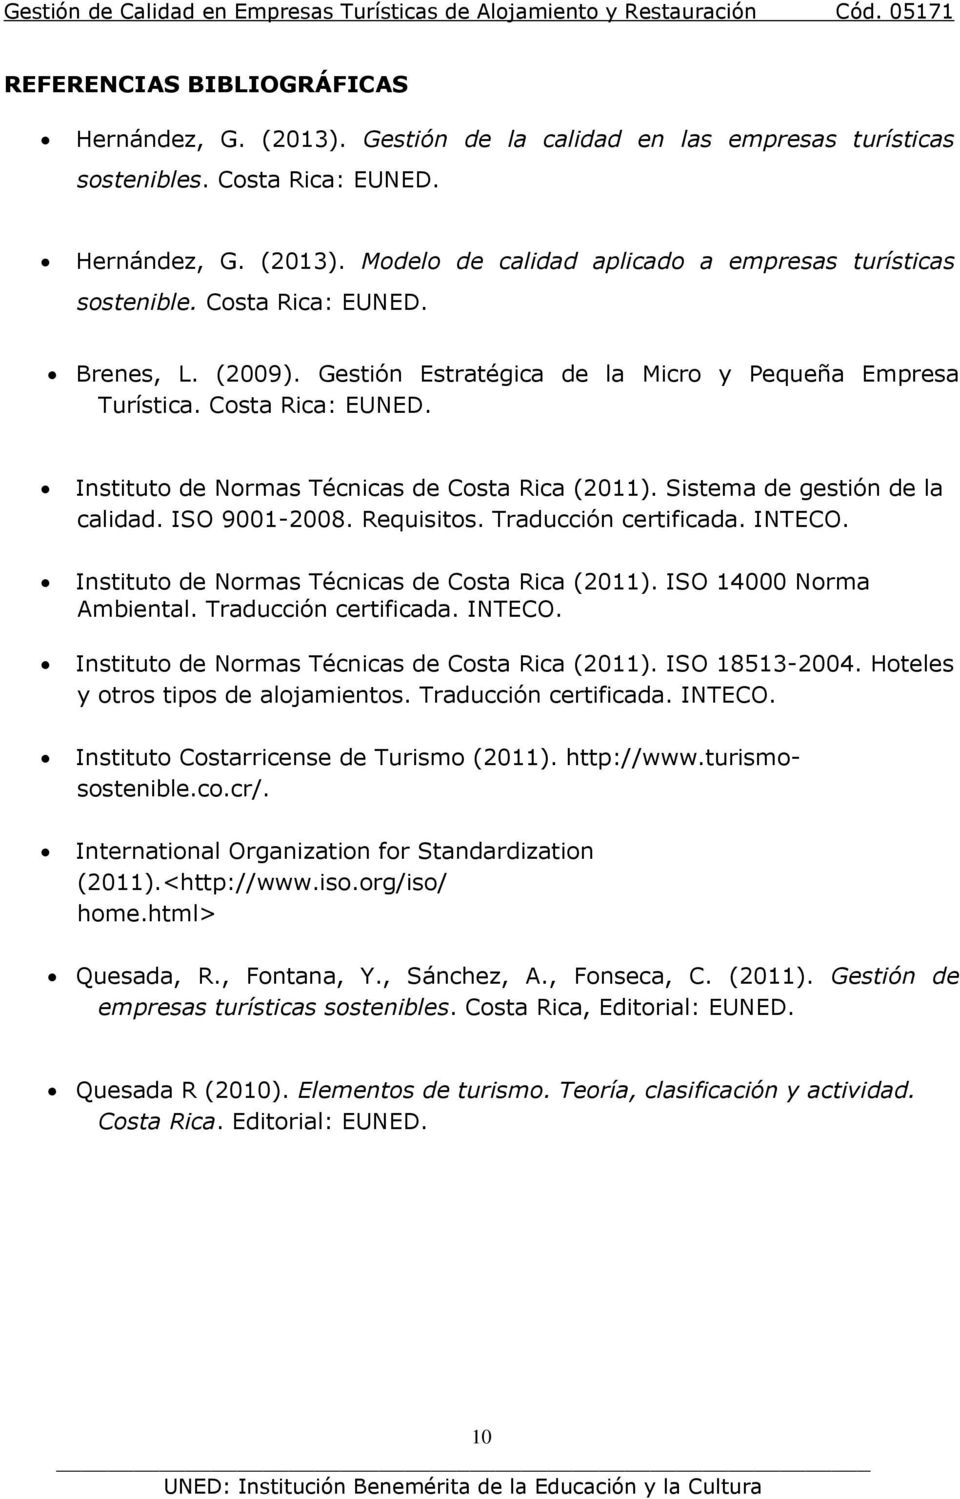 Sistema de gestión de la calidad. ISO 9001-2008. Requisitos. Traducción certificada. INTECO. Instituto de Normas Técnicas de Costa Rica (2011). ISO 14000 Norma Ambiental. Traducción certificada. INTECO. Instituto de Normas Técnicas de Costa Rica (2011). ISO 18513-2004.